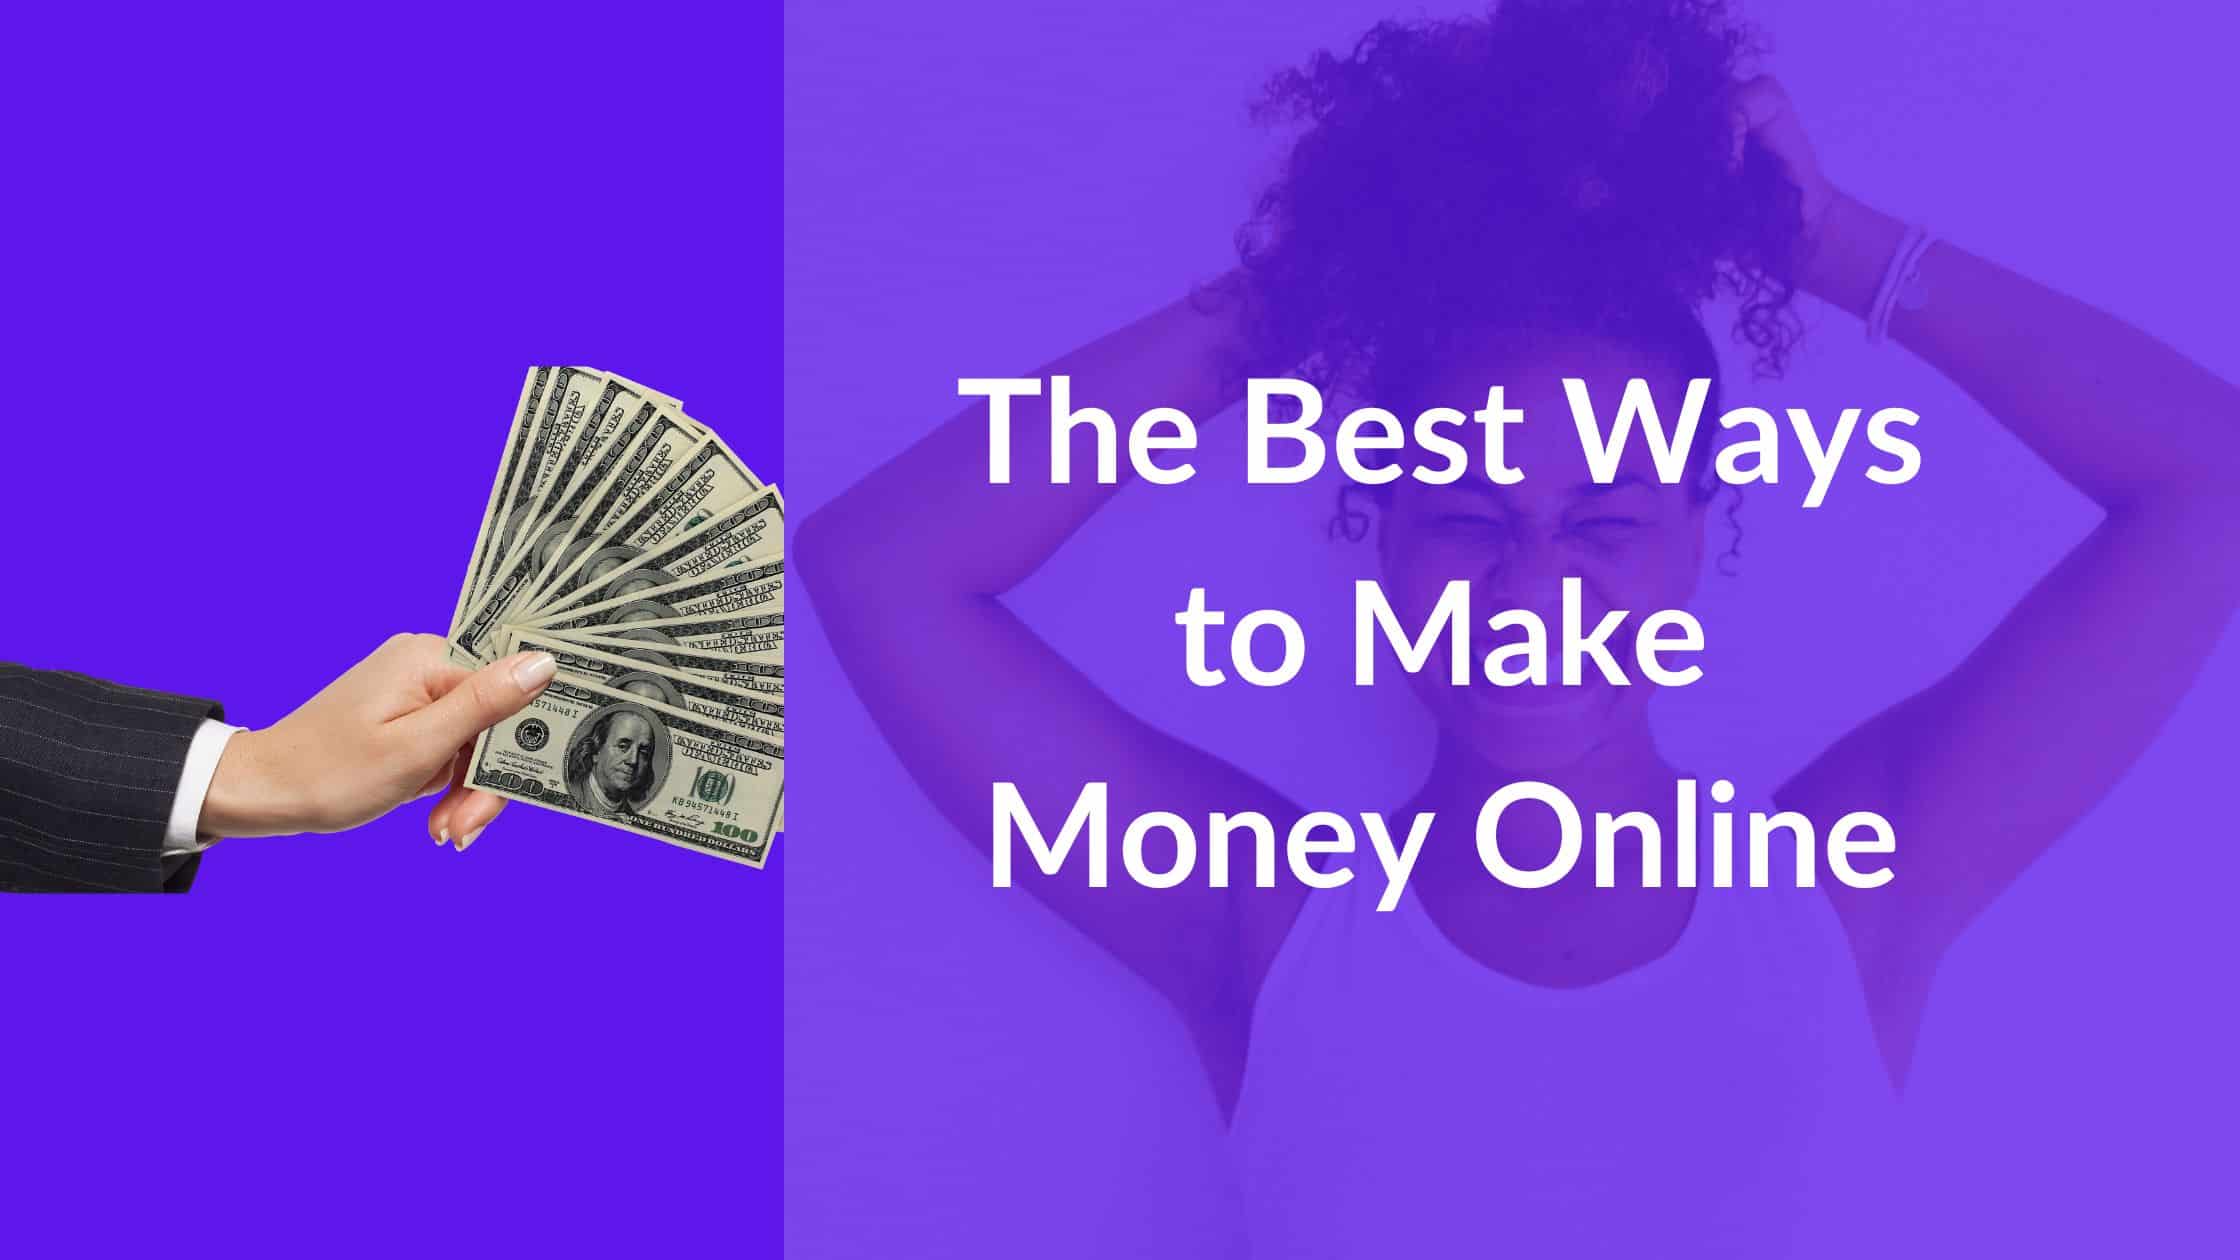 Best Ways to make money online, online businesses to start